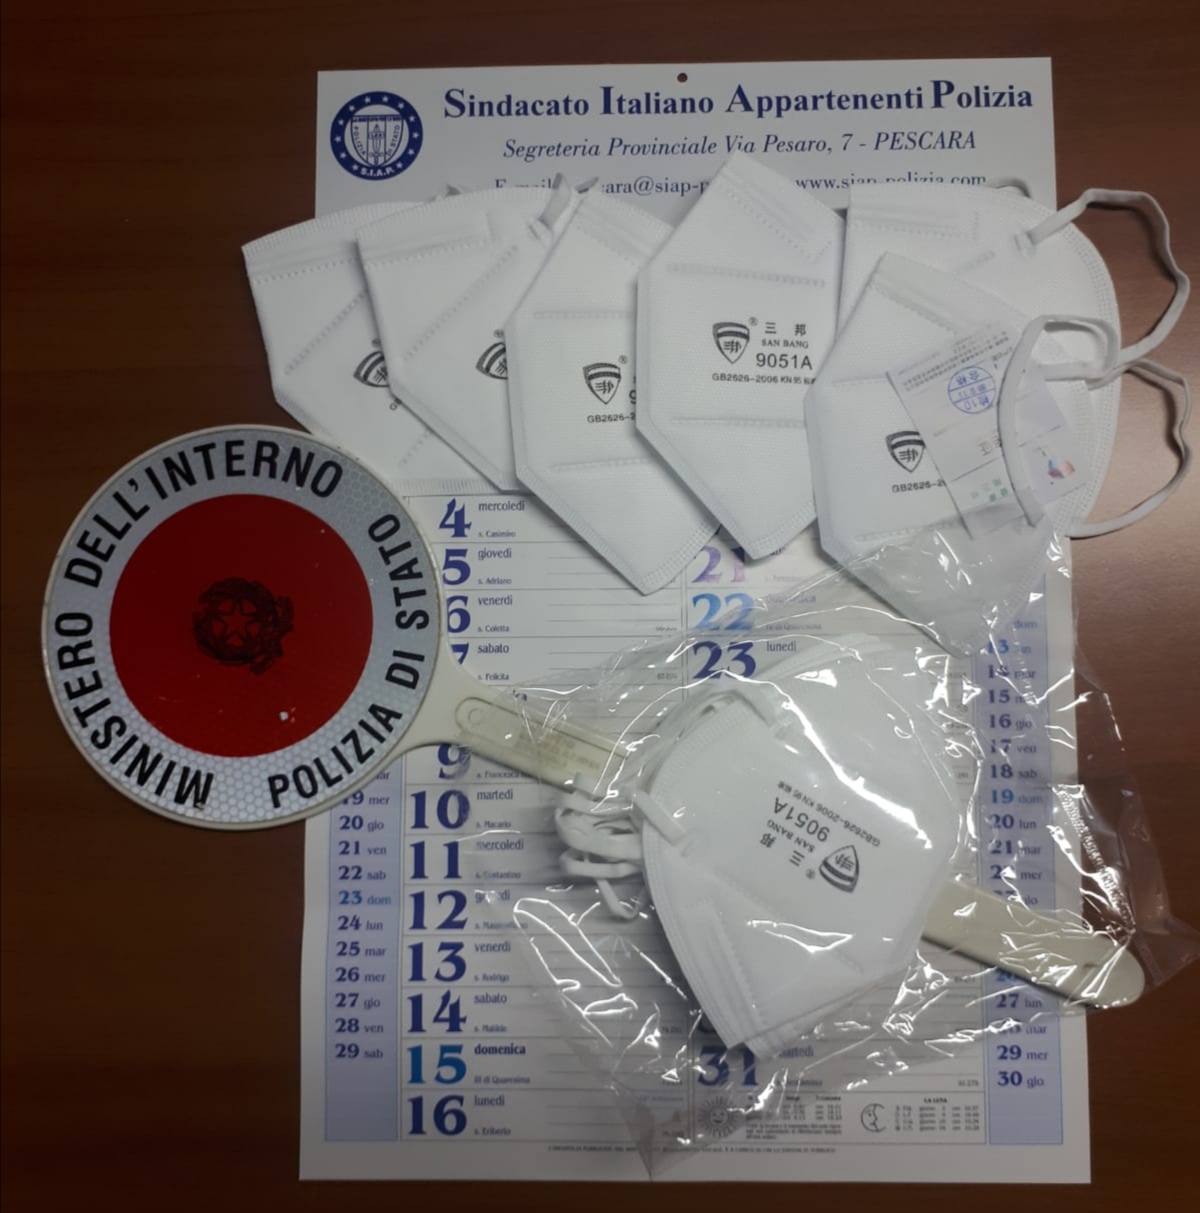 ll sindacato di Polizia SIAP dona 120 mascherine agli operatori impegnati sul territorio. 